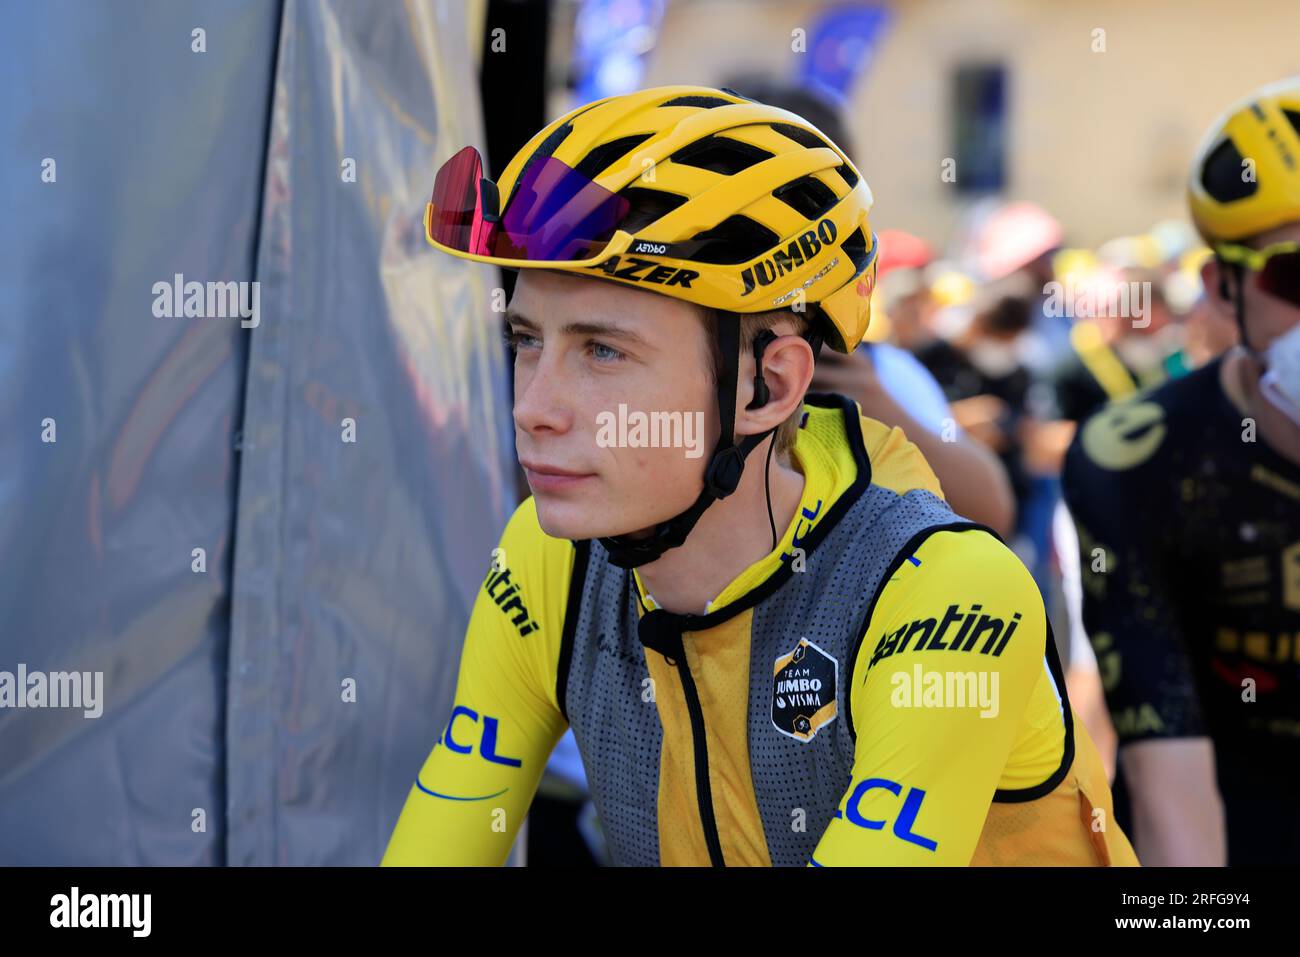 Canicule, le coureur cycliste danois maillot jaune Jonas Vingegaard s’est mis à l’ombre avant le départ de la 9ème étape du Tour de France le 9 juille Stockfoto